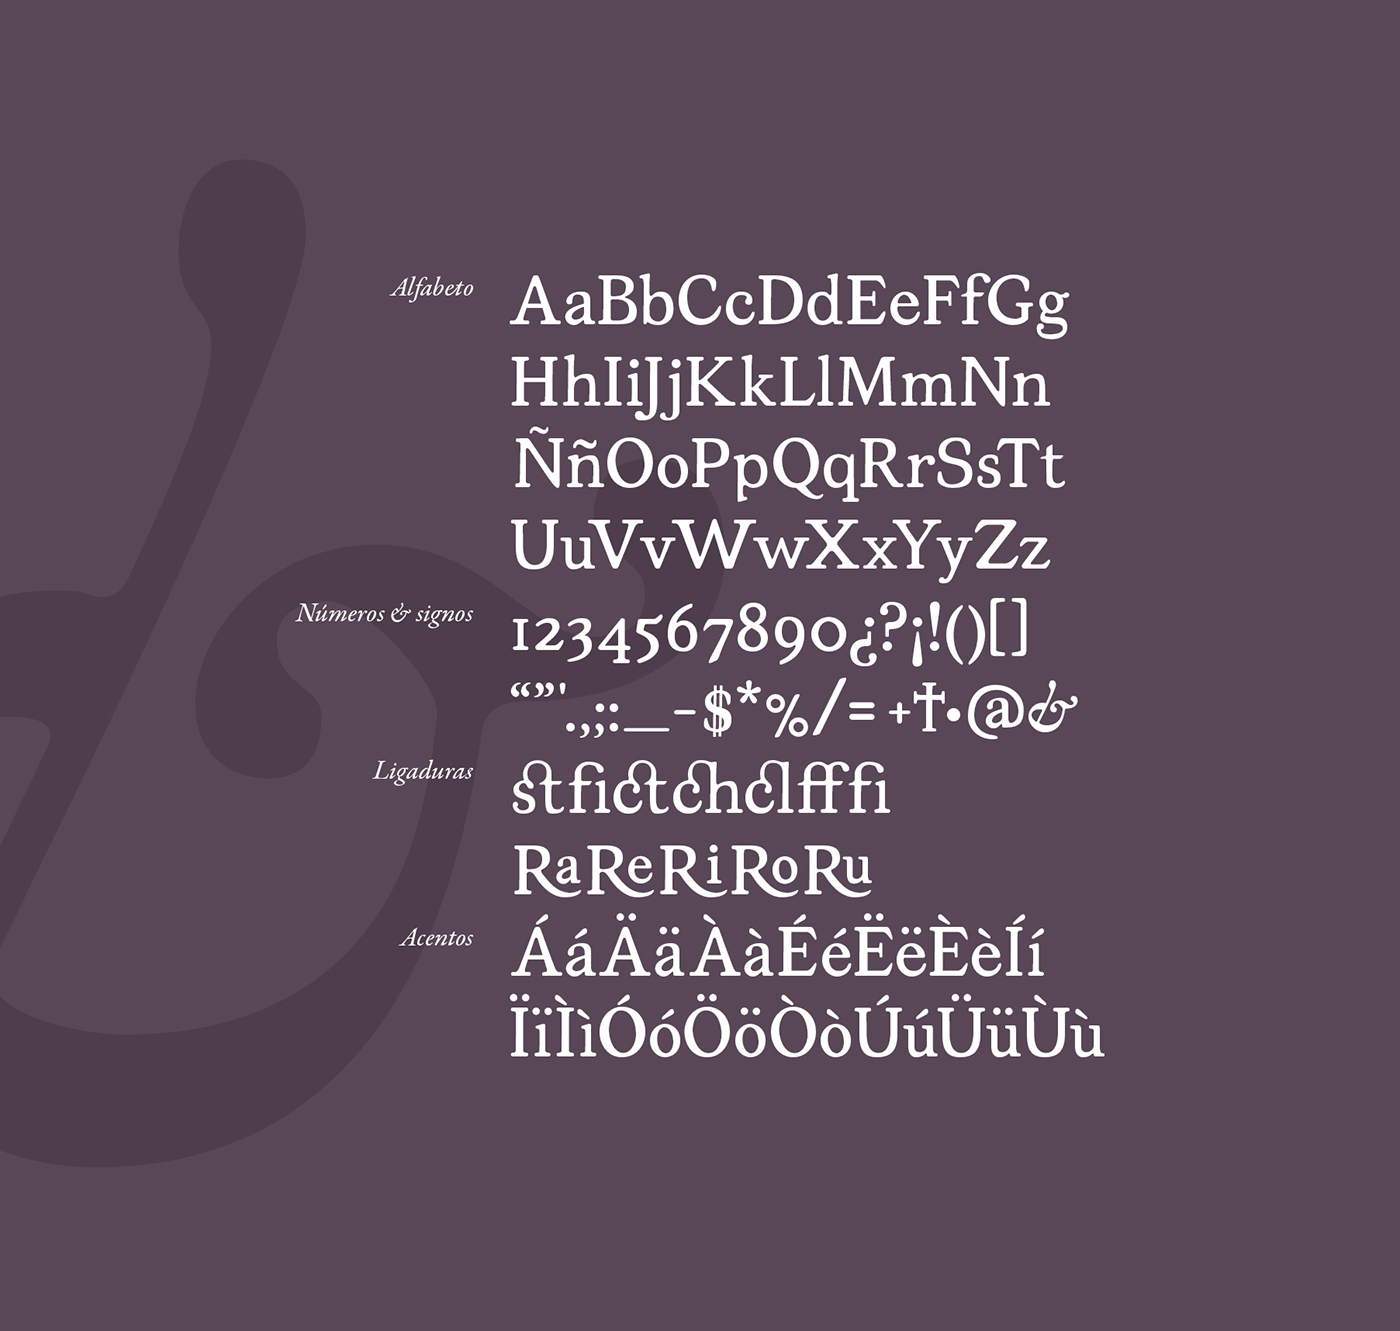 type free font tipografia Typeface gratis mexico chocolate alfabetos fad unam freebies delicia